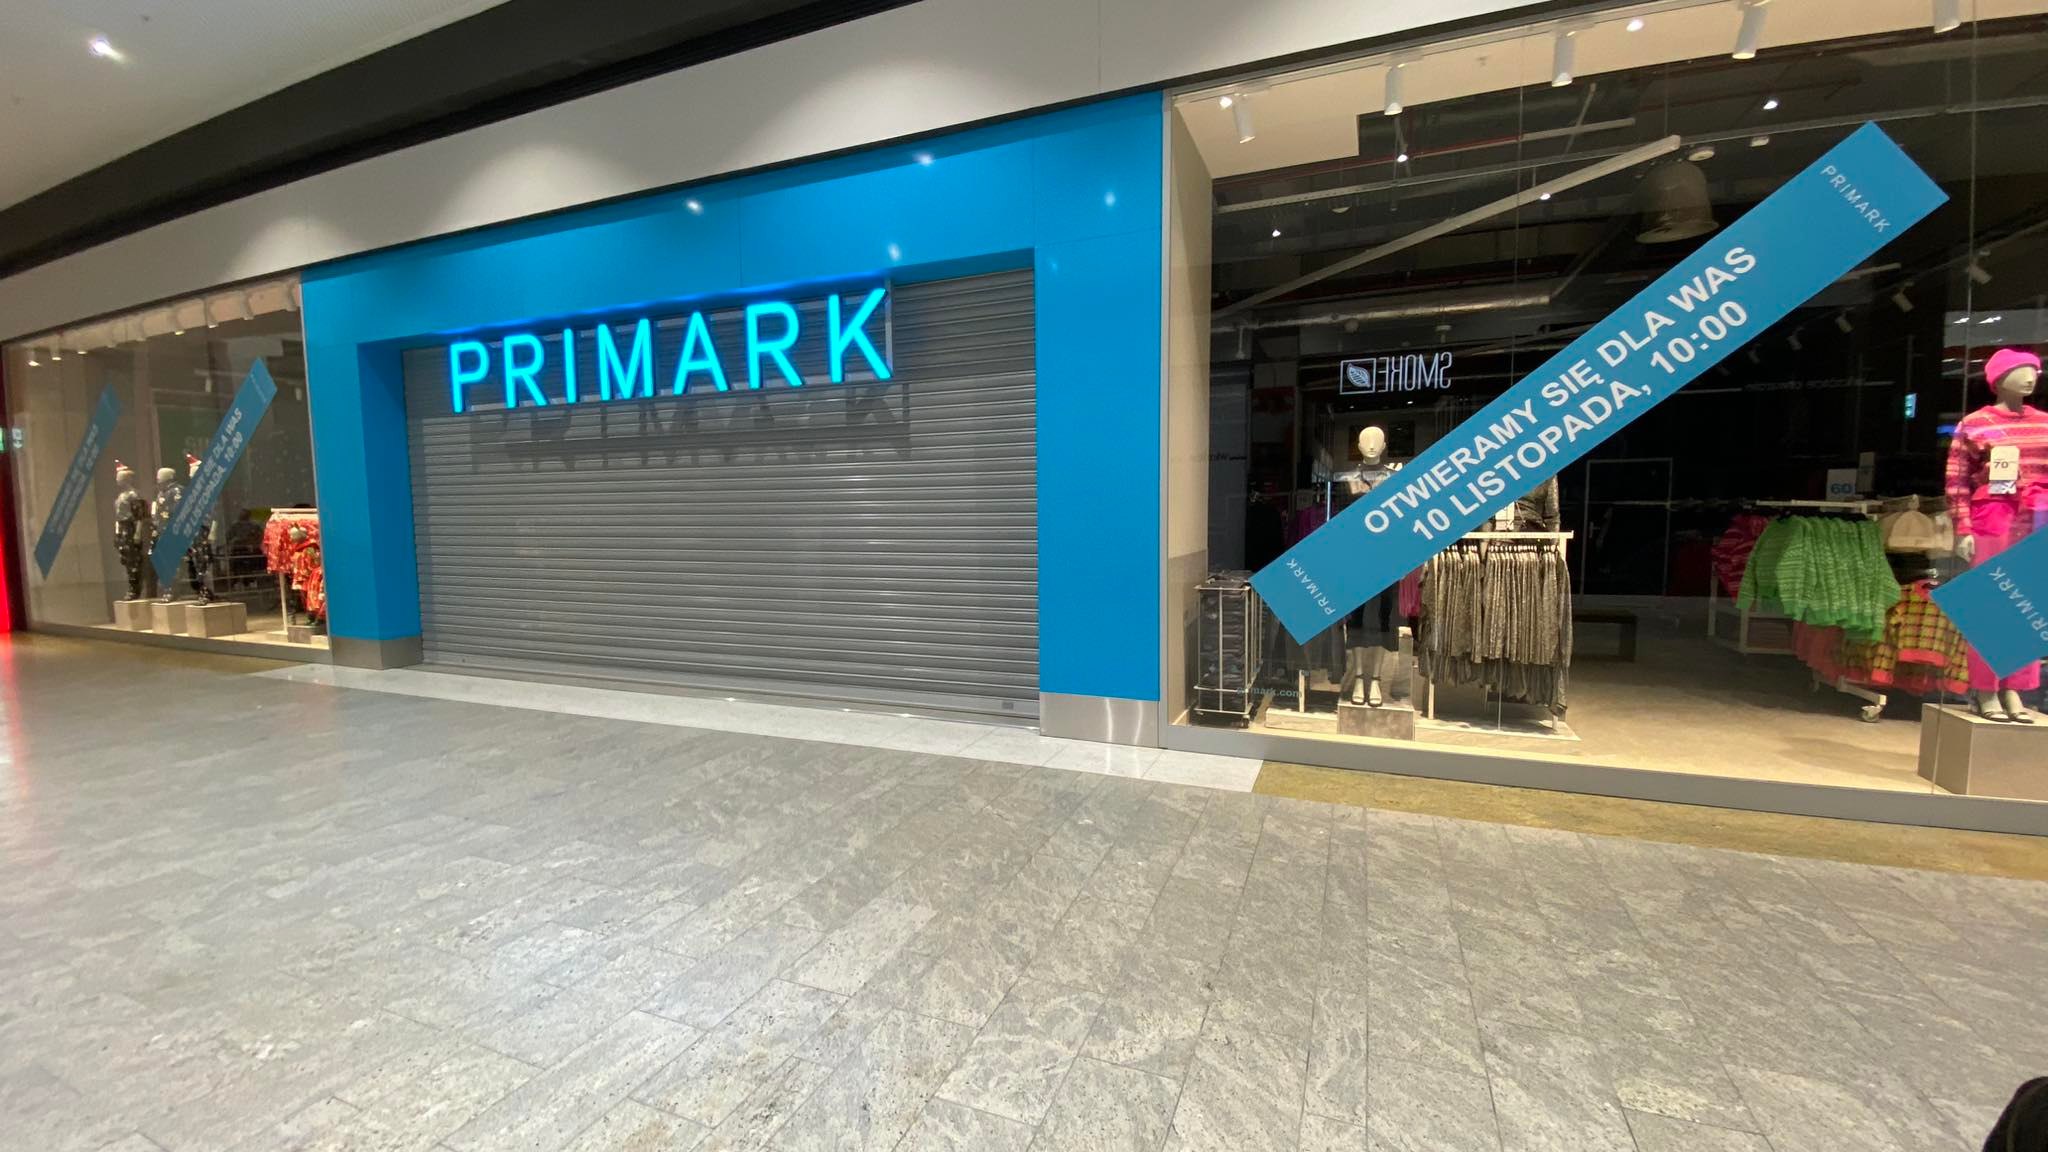 Dzisiaj otwarcie pierwszego sklepu Primark w Krakowie. Jest duży jak hipermarket